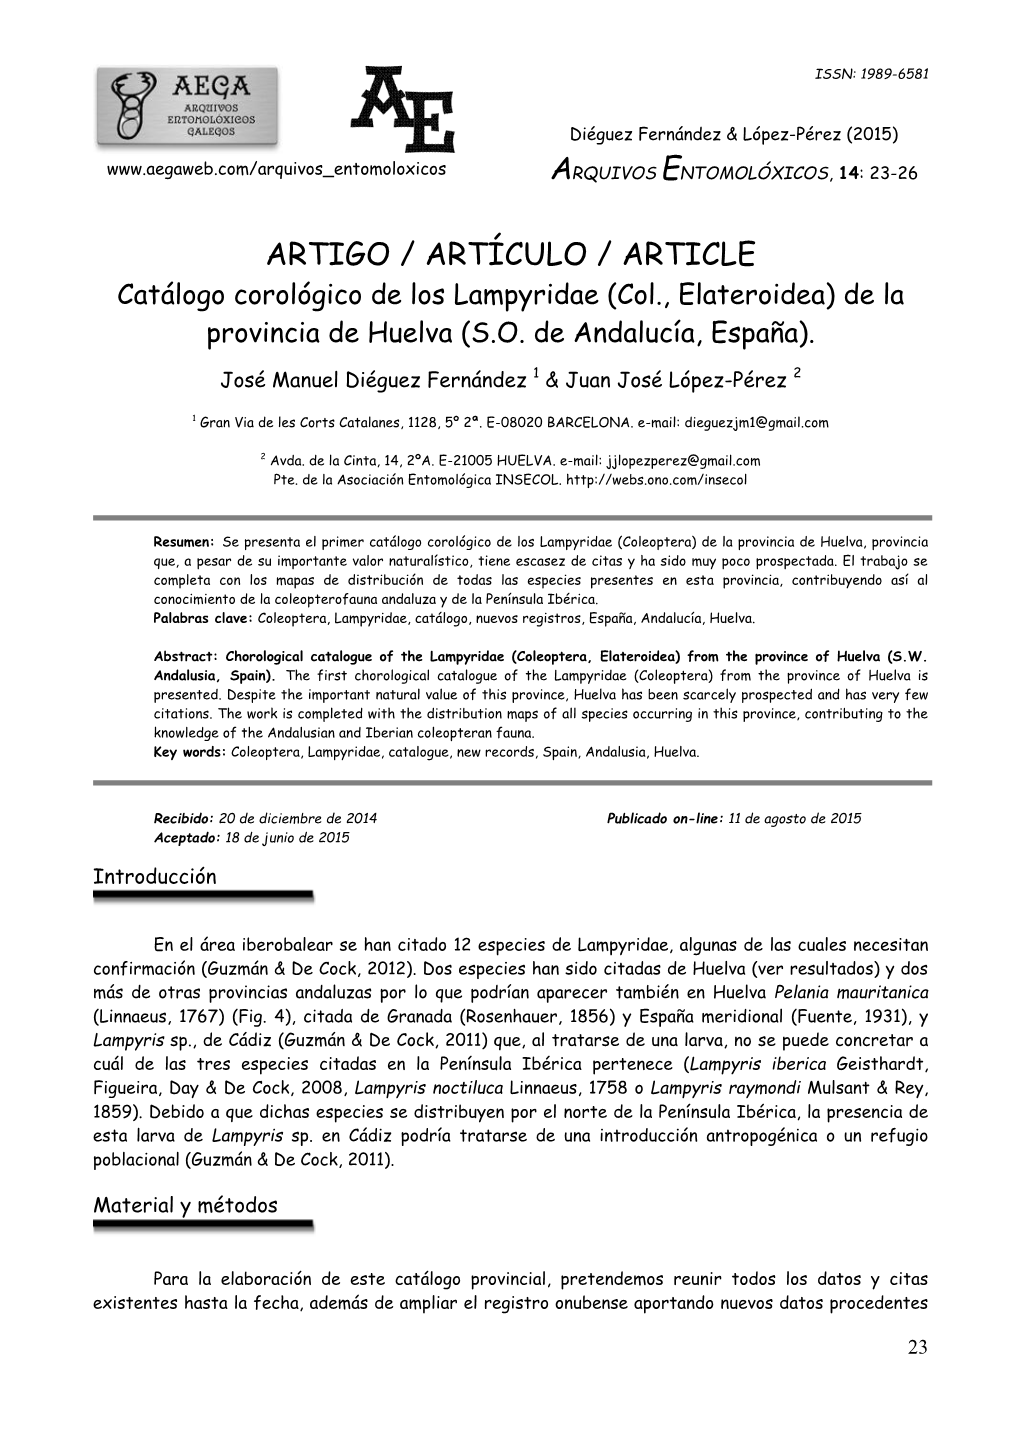 ARTIGO / ARTÍCULO / ARTICLE Catálogo Corológico De Los Lampyridae (Col., Elateroidea) De La Provincia De Huelva (S.O